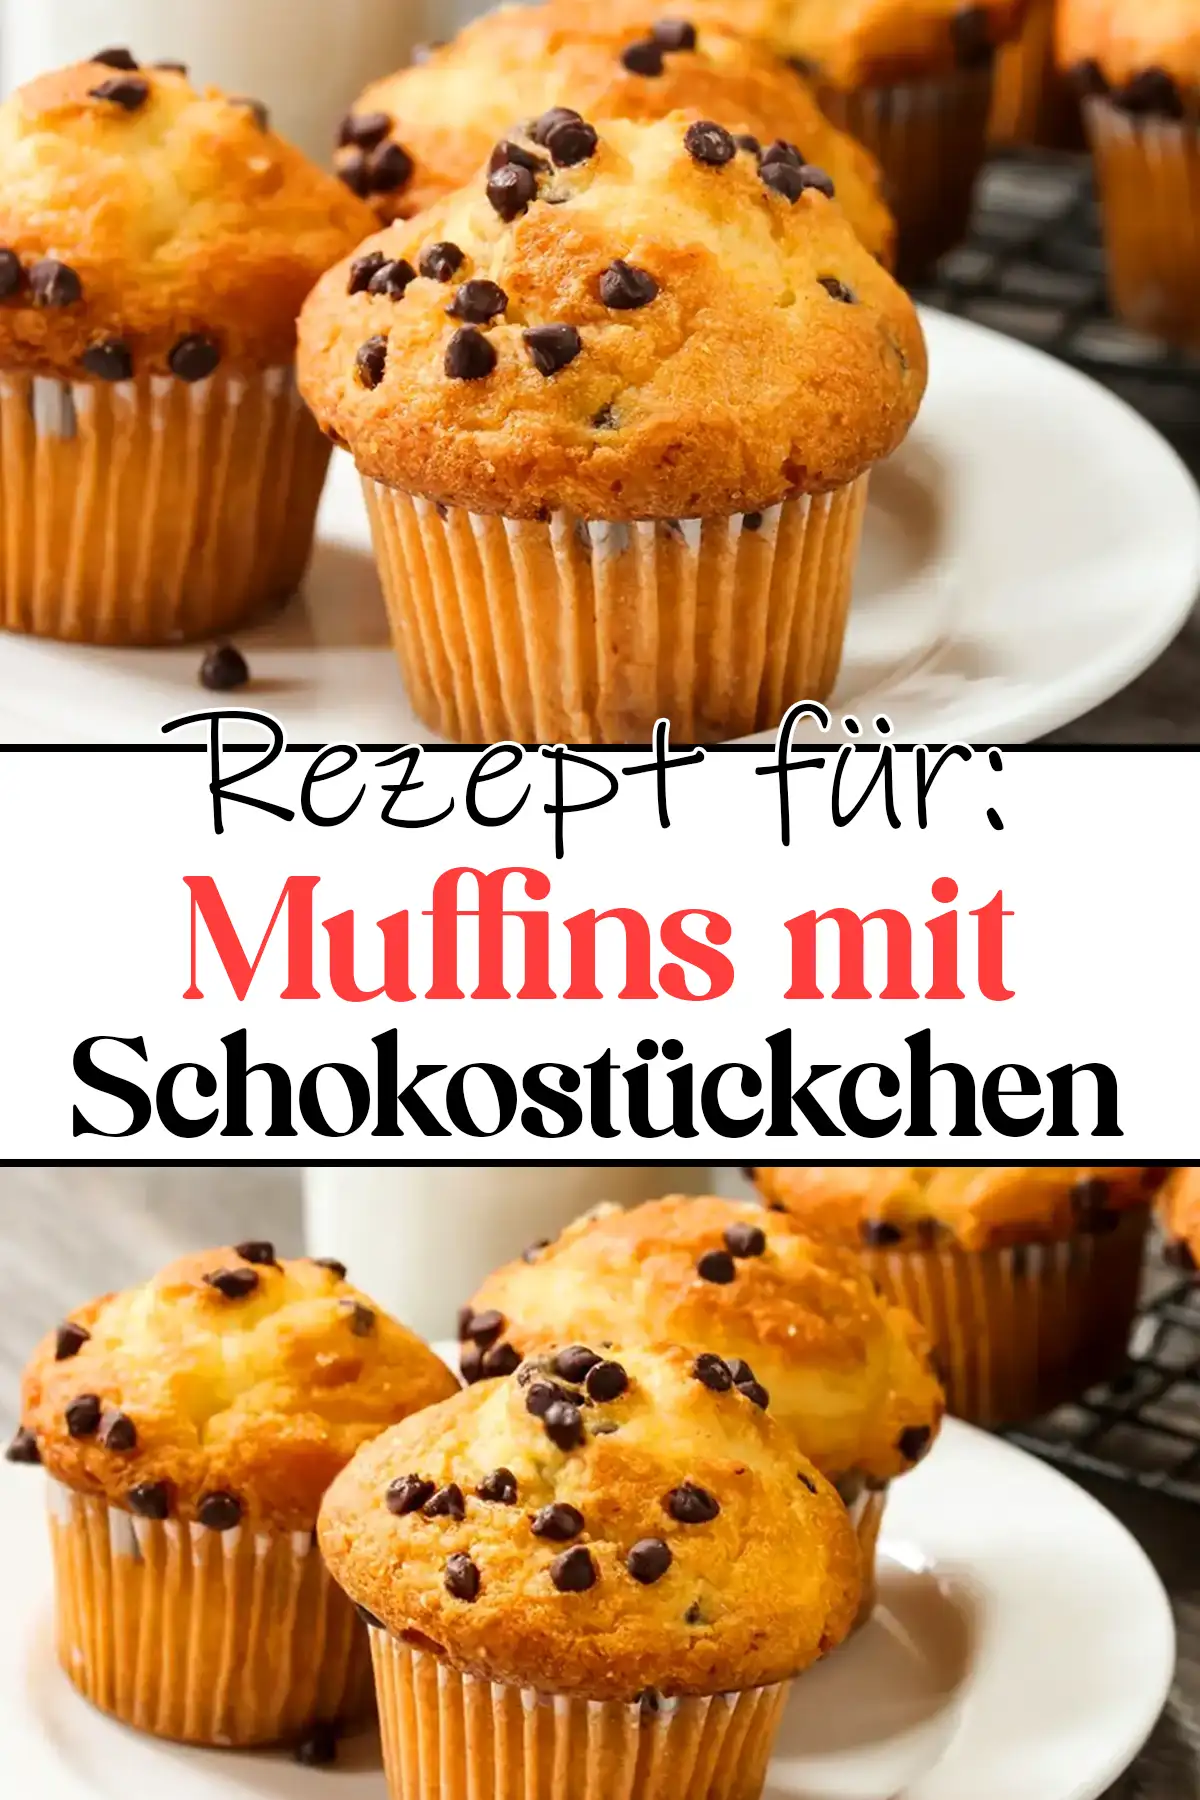 Muffins mit Schokostückchen Rezept